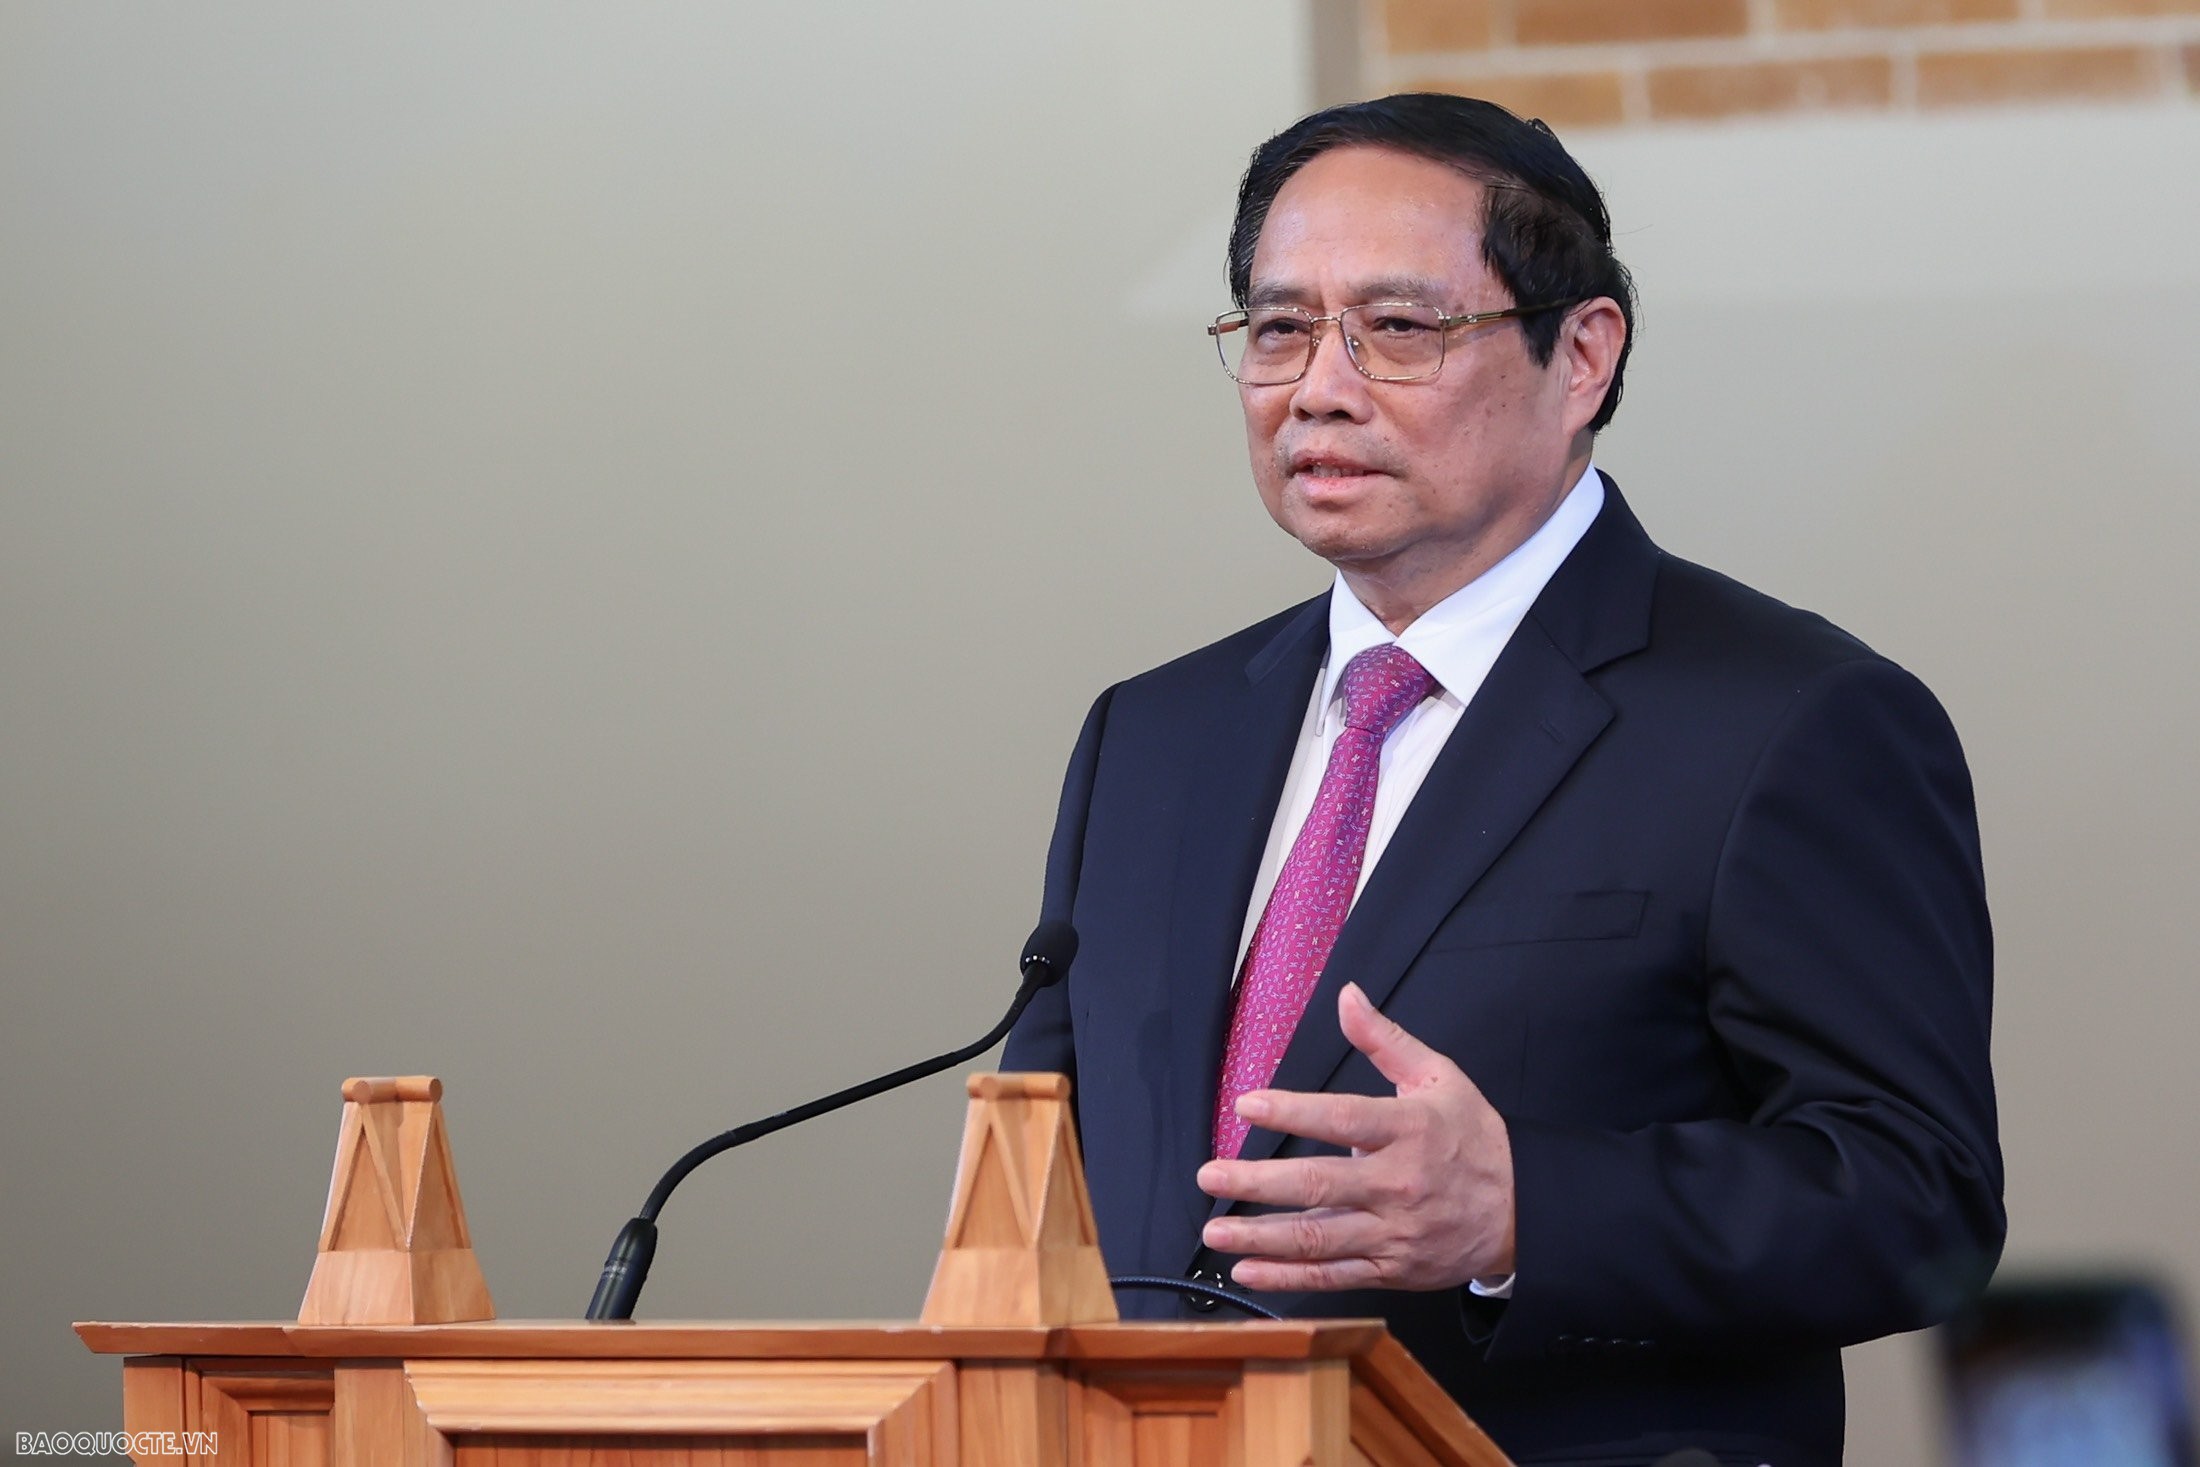 Bài phát biểu chính sách ý nghĩa và sâu sắc của Thủ tướng Phạm Minh Chính tại Đại học Victoria Wellington, New Zealand